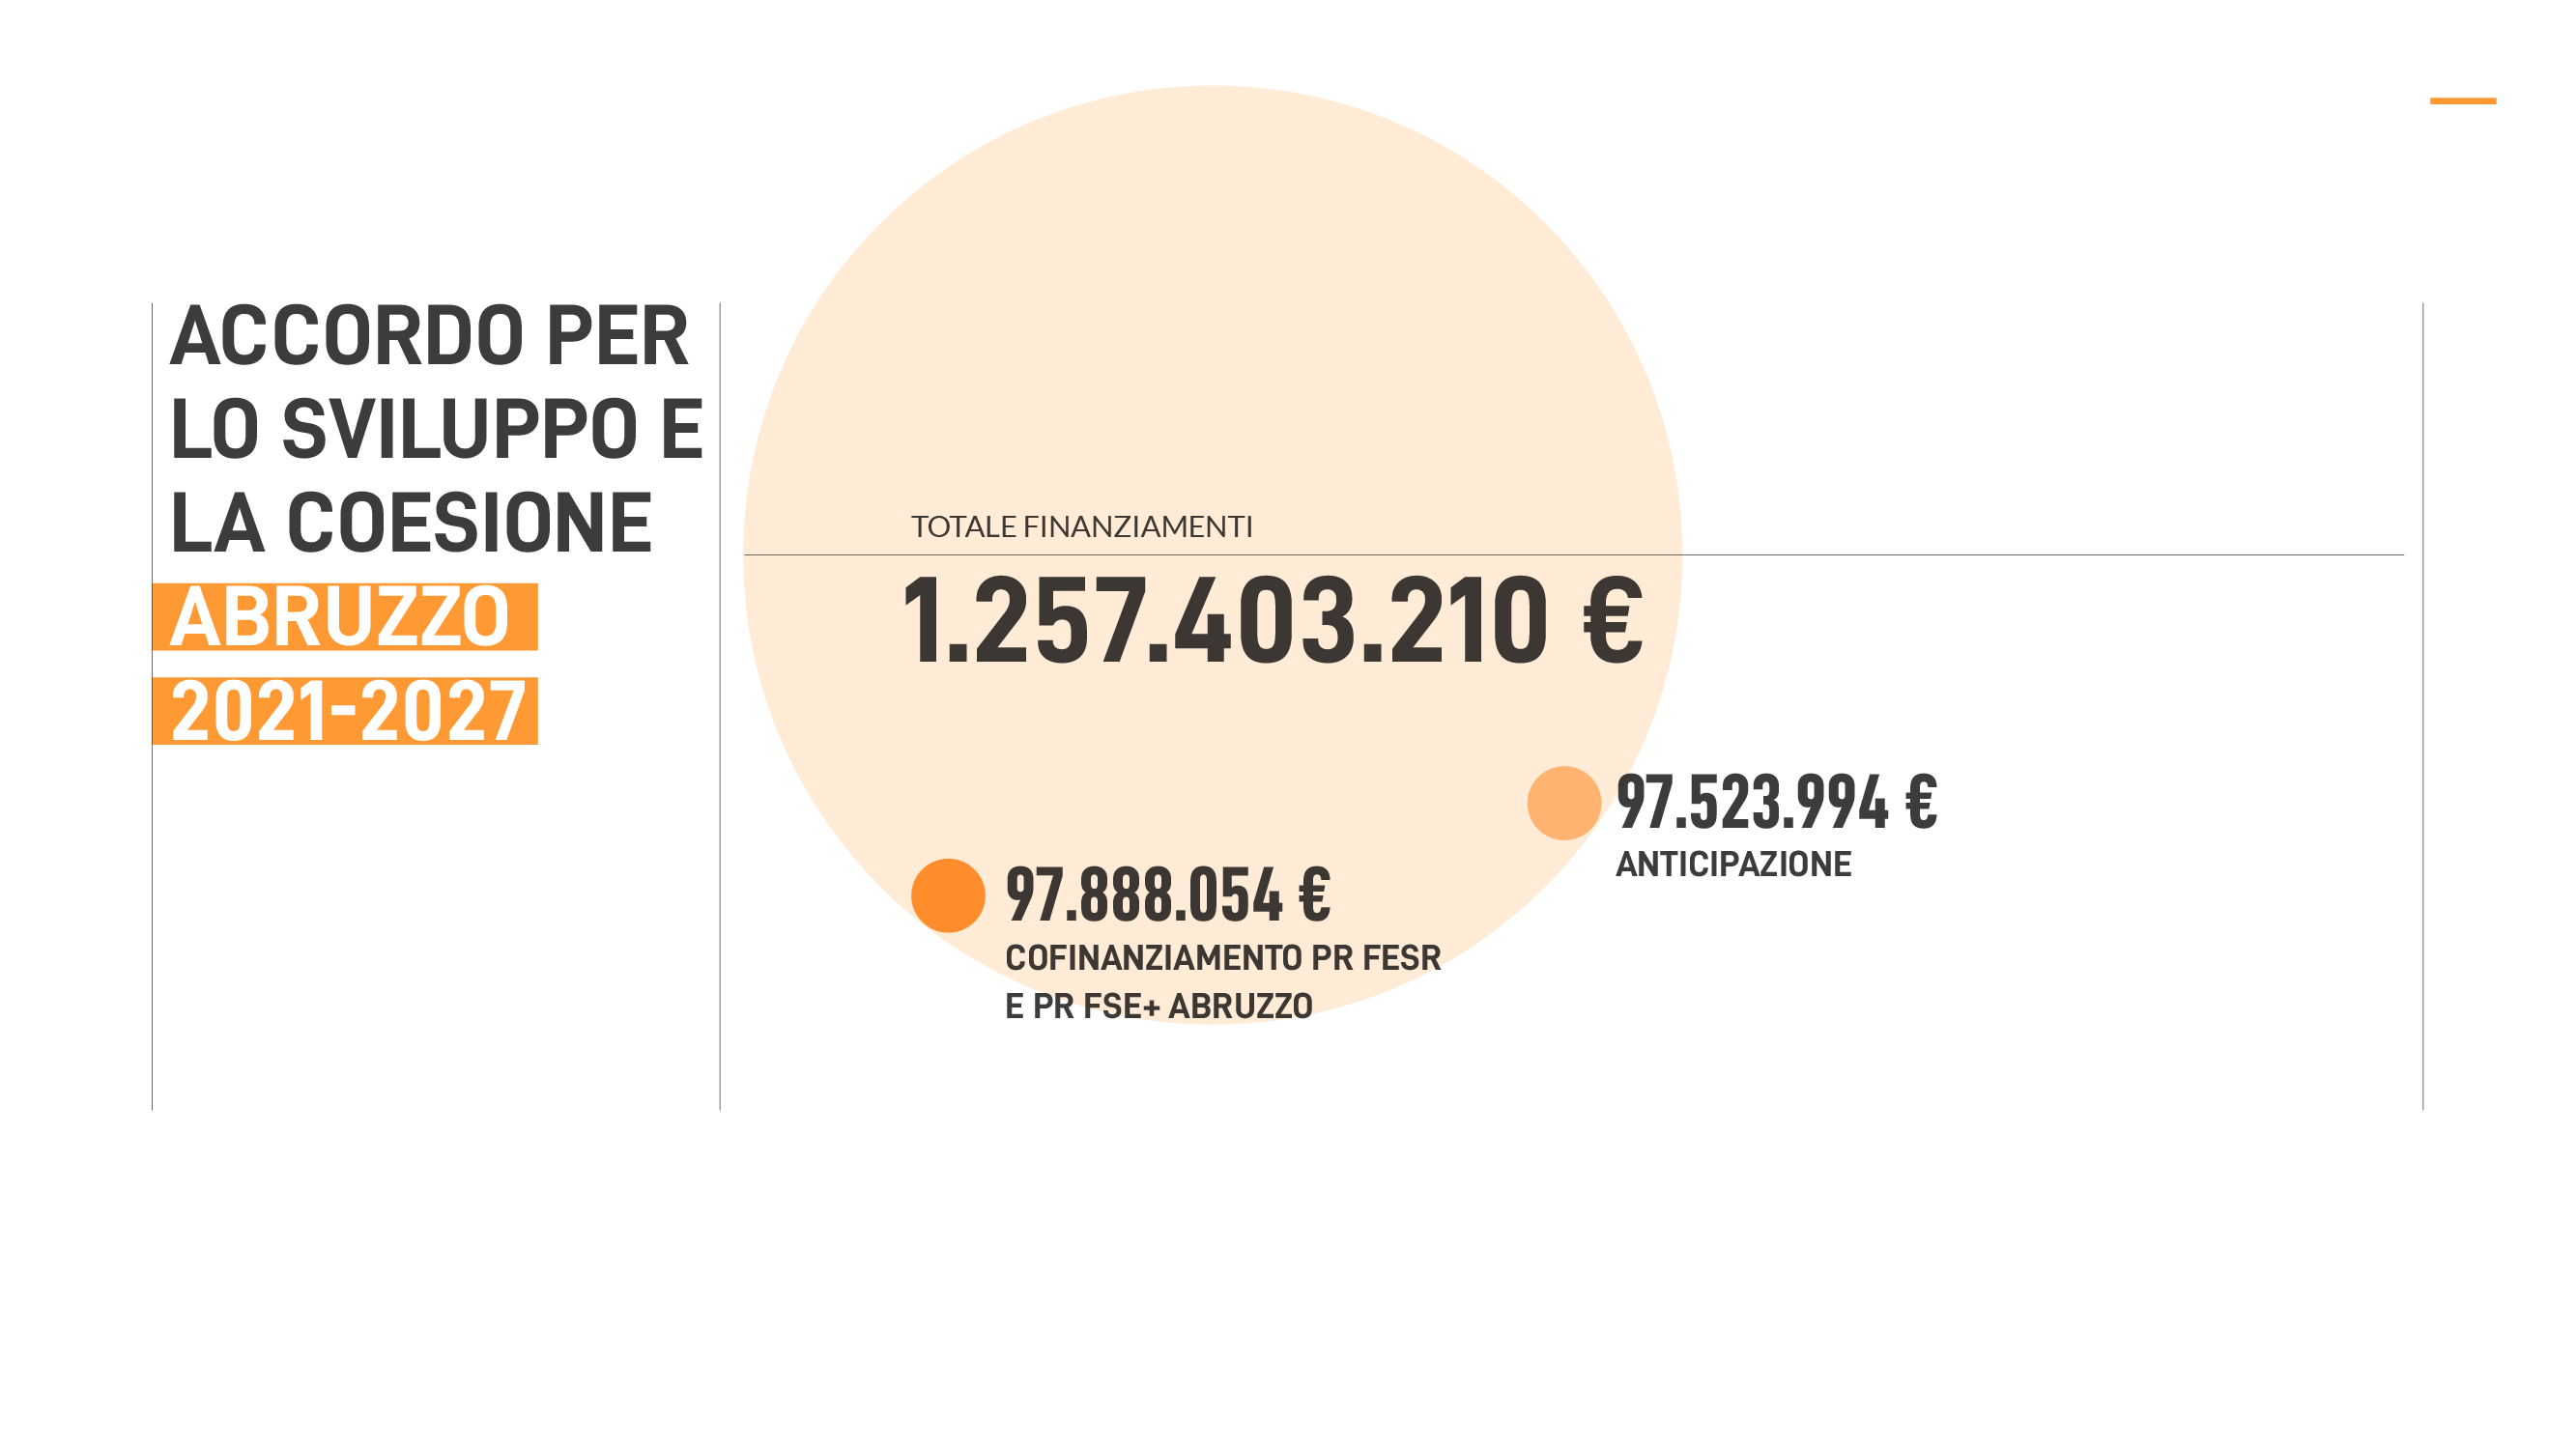 ACCORDO PER LO SVIUPPO E LA COESIONE ABRUZZO 2021-2027: TOTALE FINANZIAMENTI: 1.257.403.210 euro, di cui 97.523.994 euro di ANTICIPAZIONE e 97.888.054 euro di COFINANZIAMENTO PR FESR
E PR FSE+ ABRUZZO